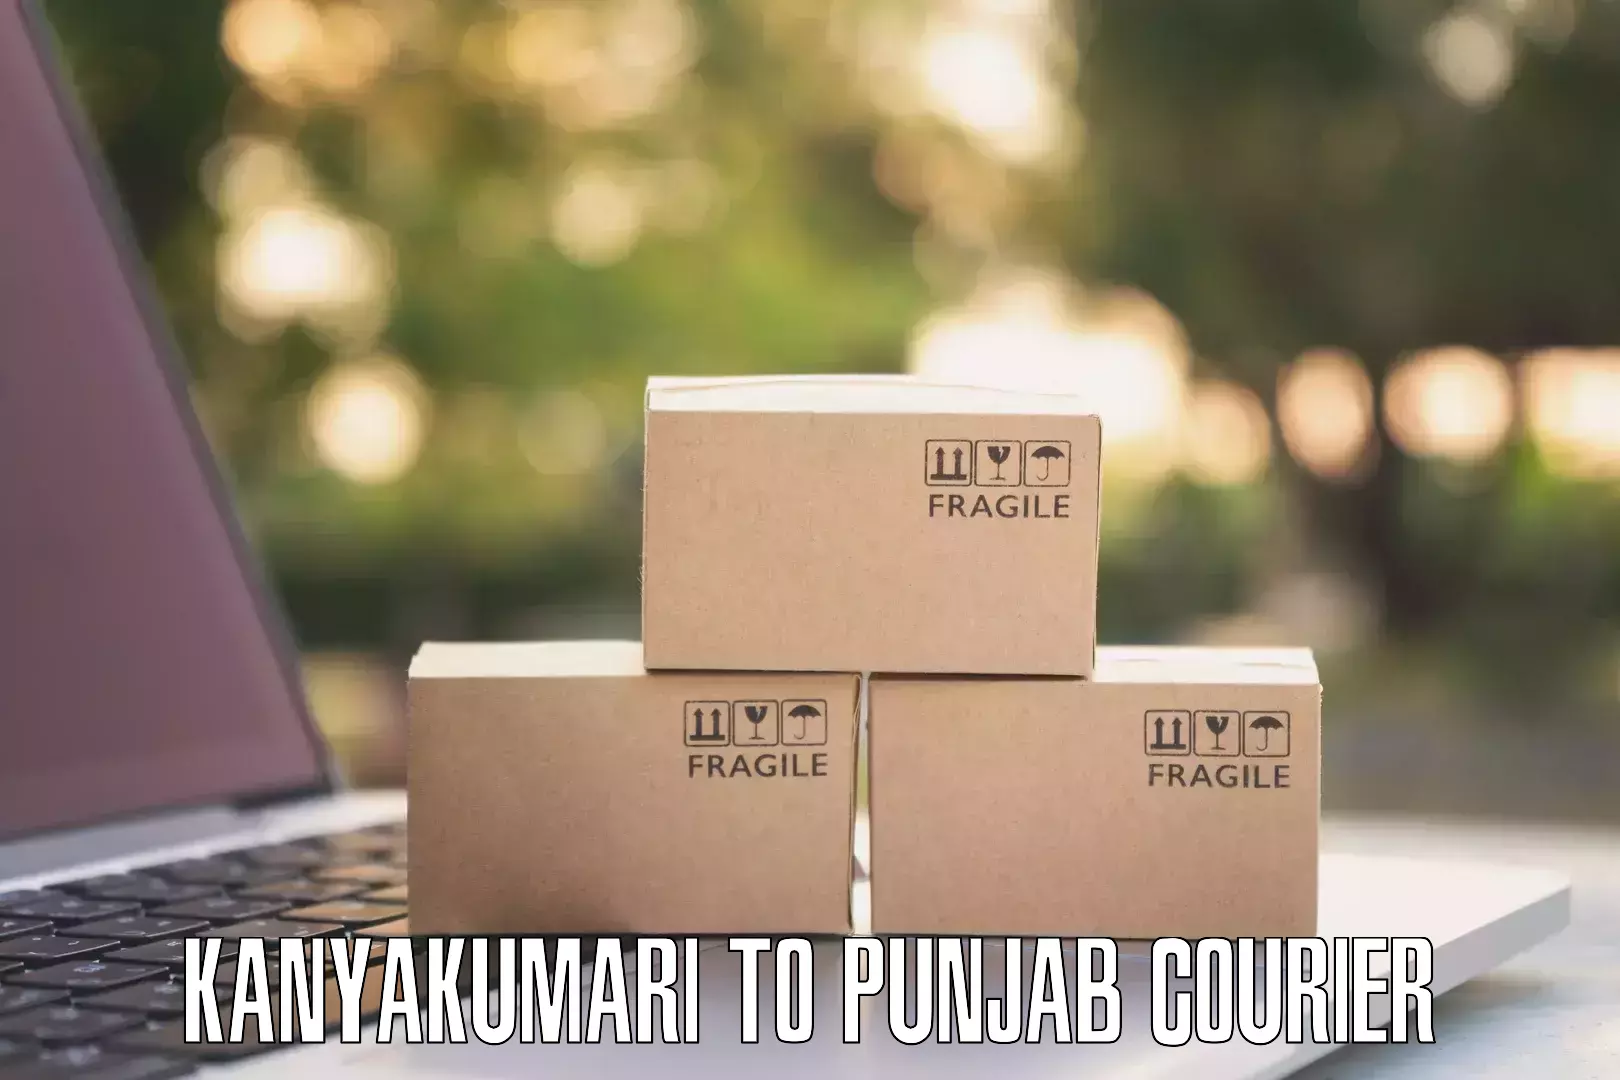 Affordable shipping solutions Kanyakumari to Talwara